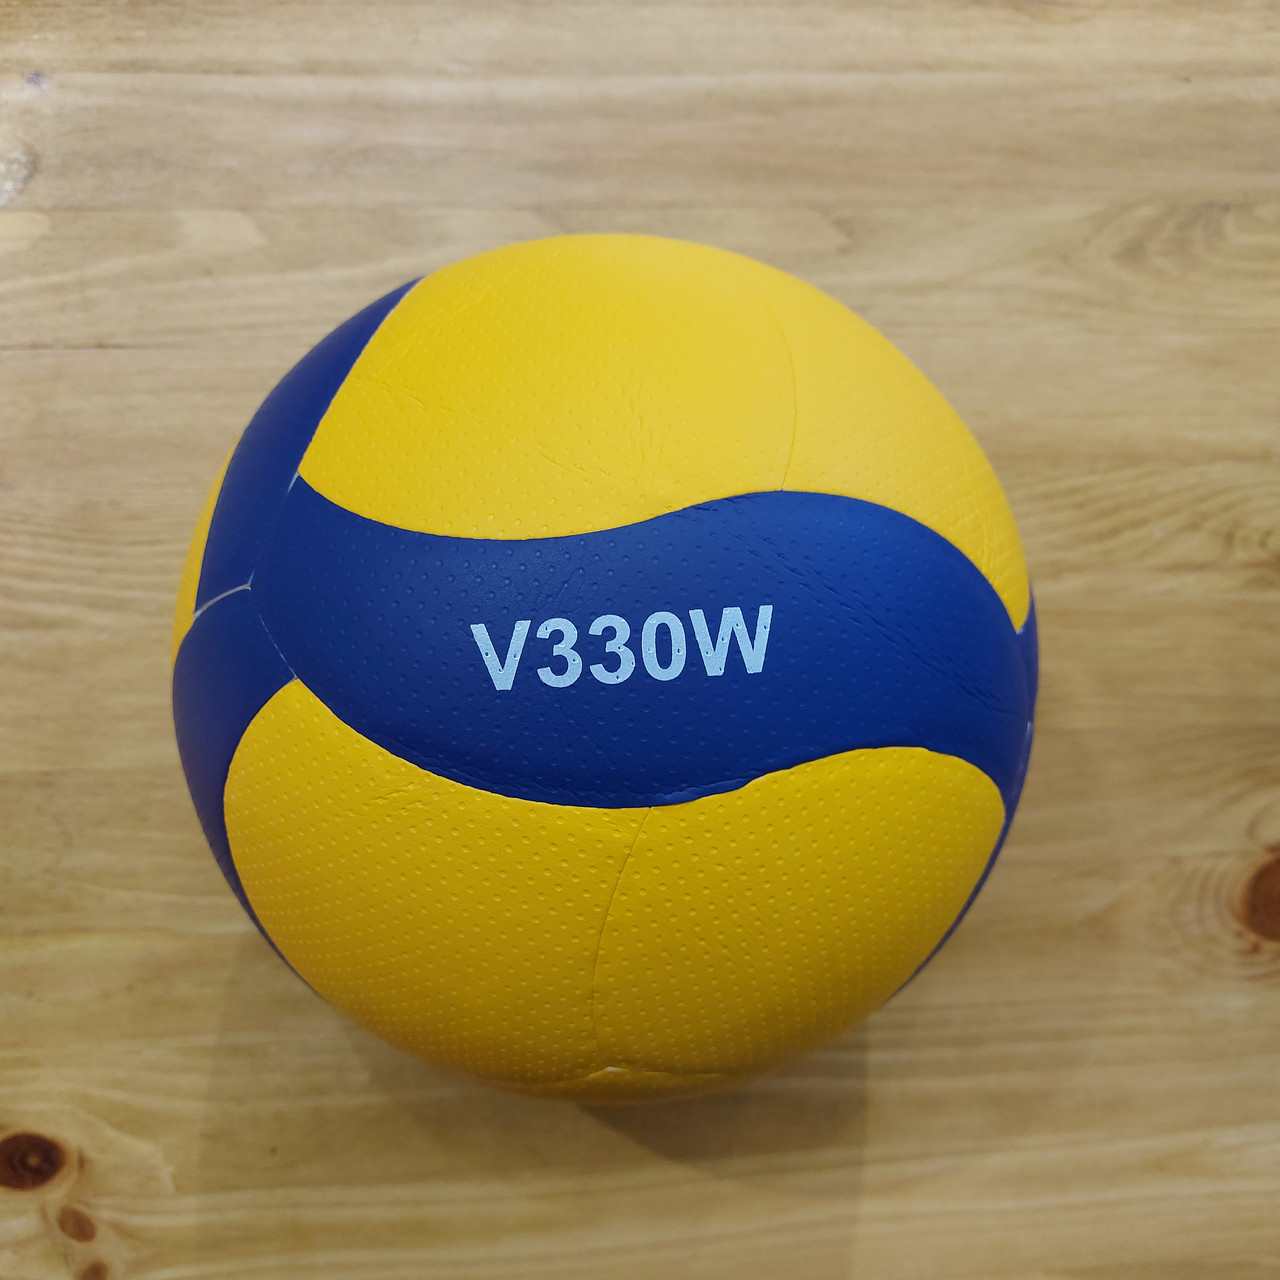 Оригинальный волейбольный мяч "Mikasa" V330W. Для соревнований. Профессиональный. Подарок.